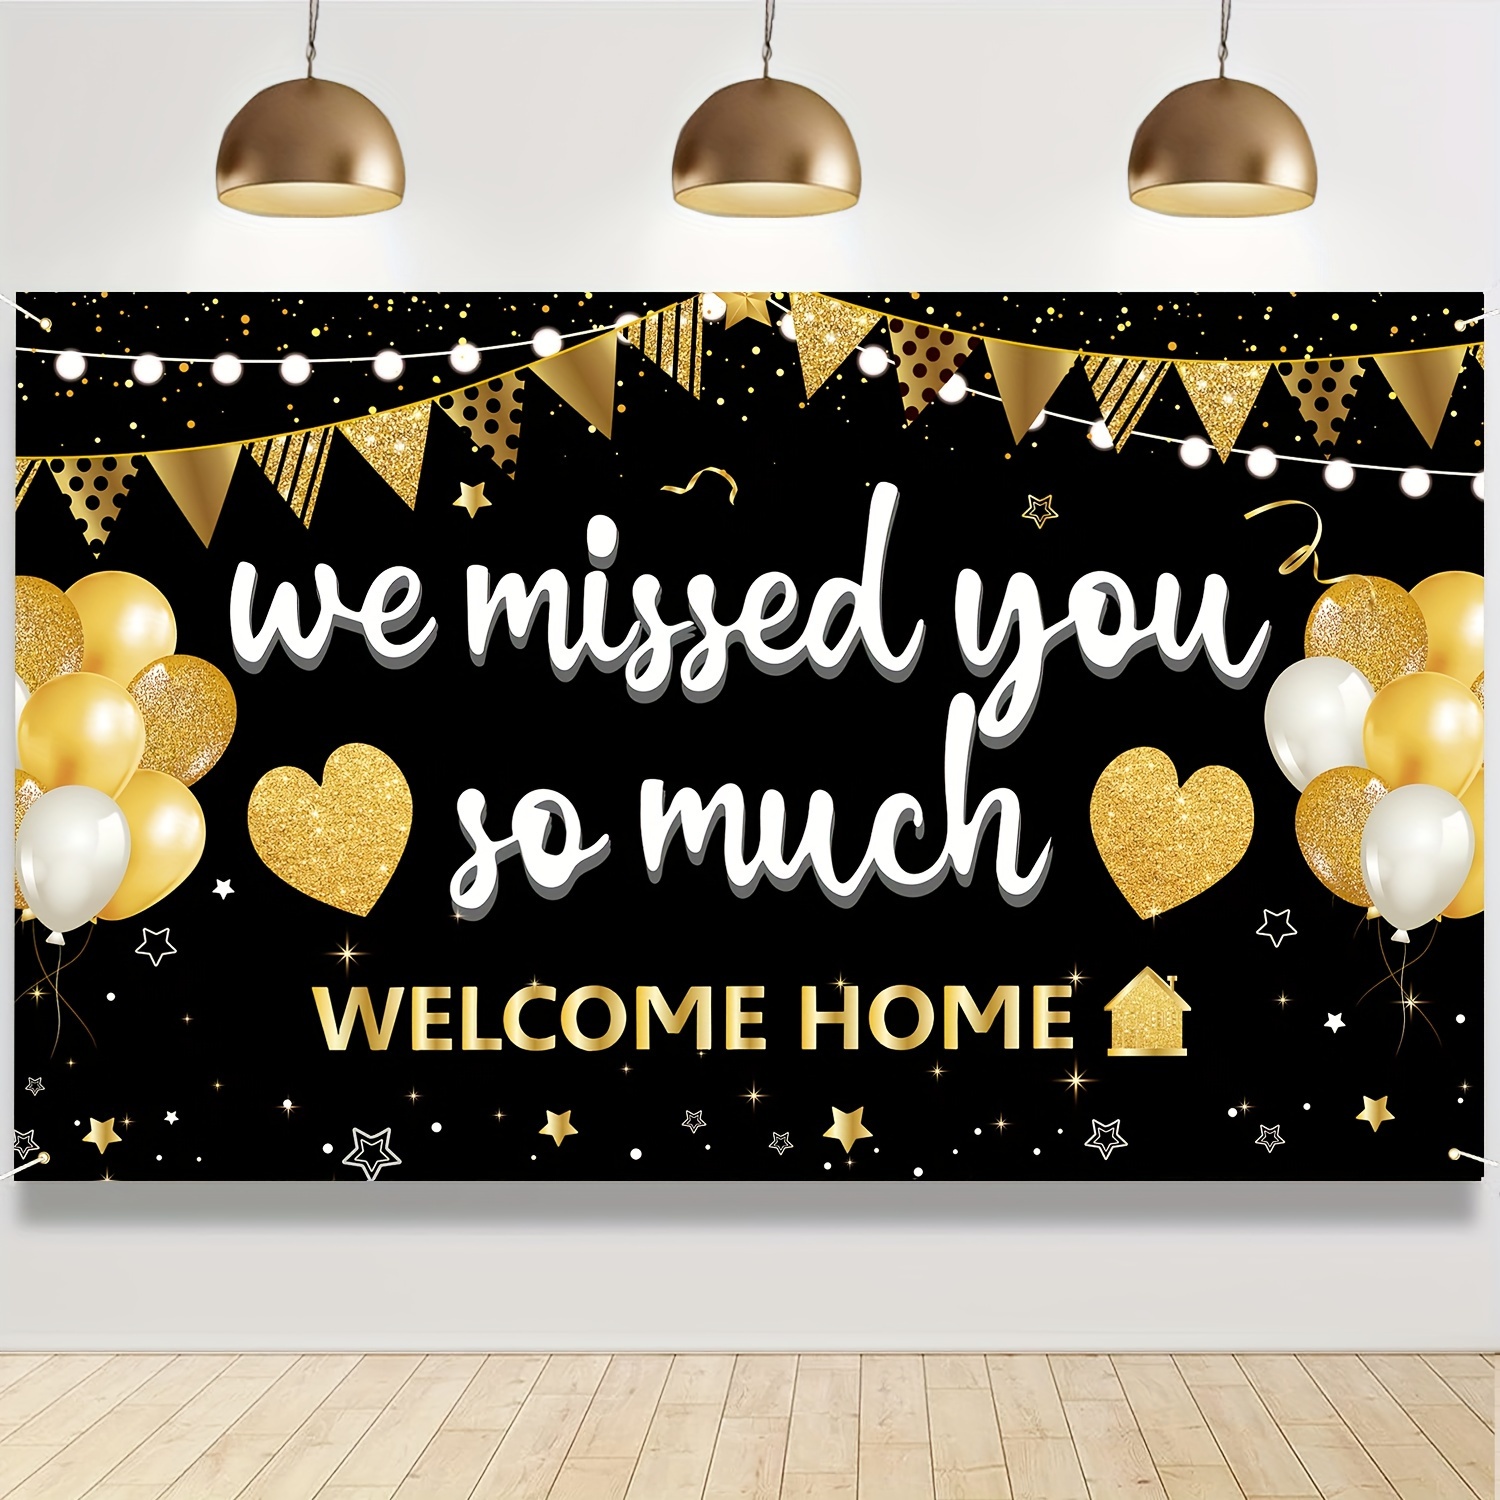 Decoraciones de bienvenida al hogar, globos de bienvenida a casa, pancarta  de bienvenida para bebé, globos de bienvenida a casa, letrero de bienvenida